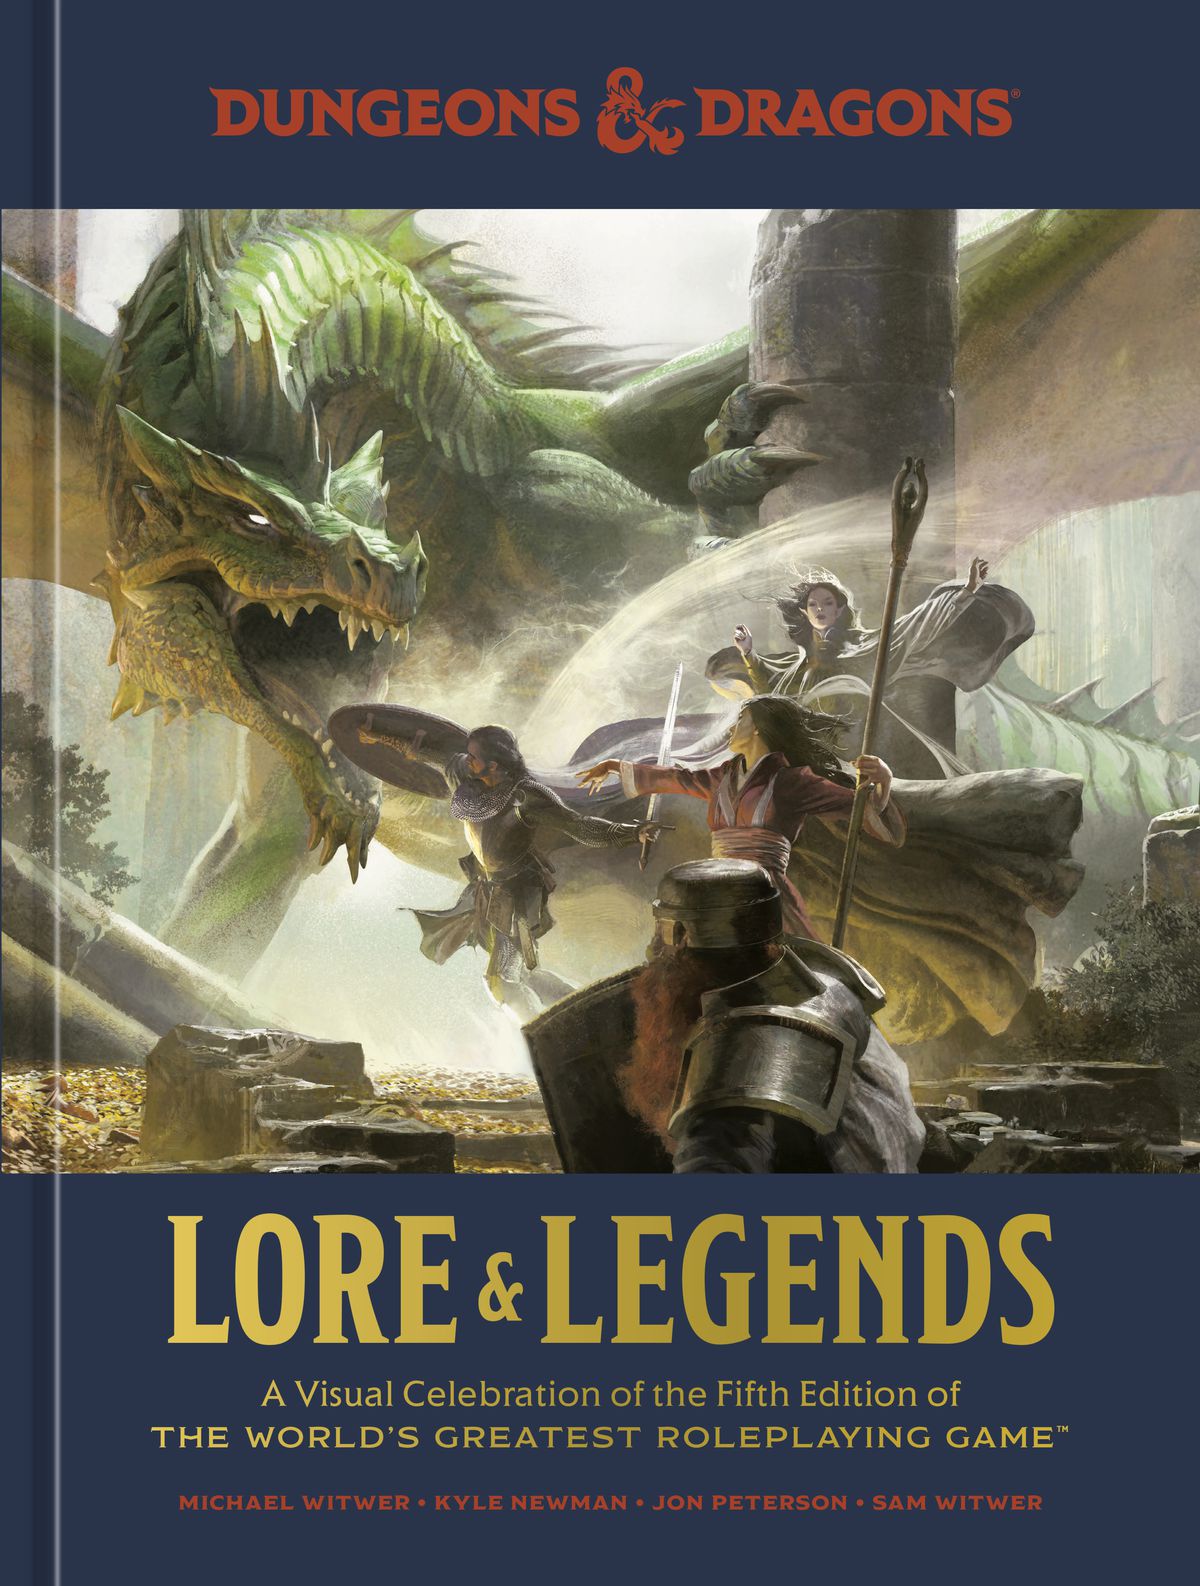 Un rendering a piena risoluzione della copertina di Lore & Legends, che mostra un drago verde che combatte contro un gruppo di avventurieri.  Un nano corazzato è in primo piano, un guerriero umano sullo sfondo e due spallcaster in mezzo.